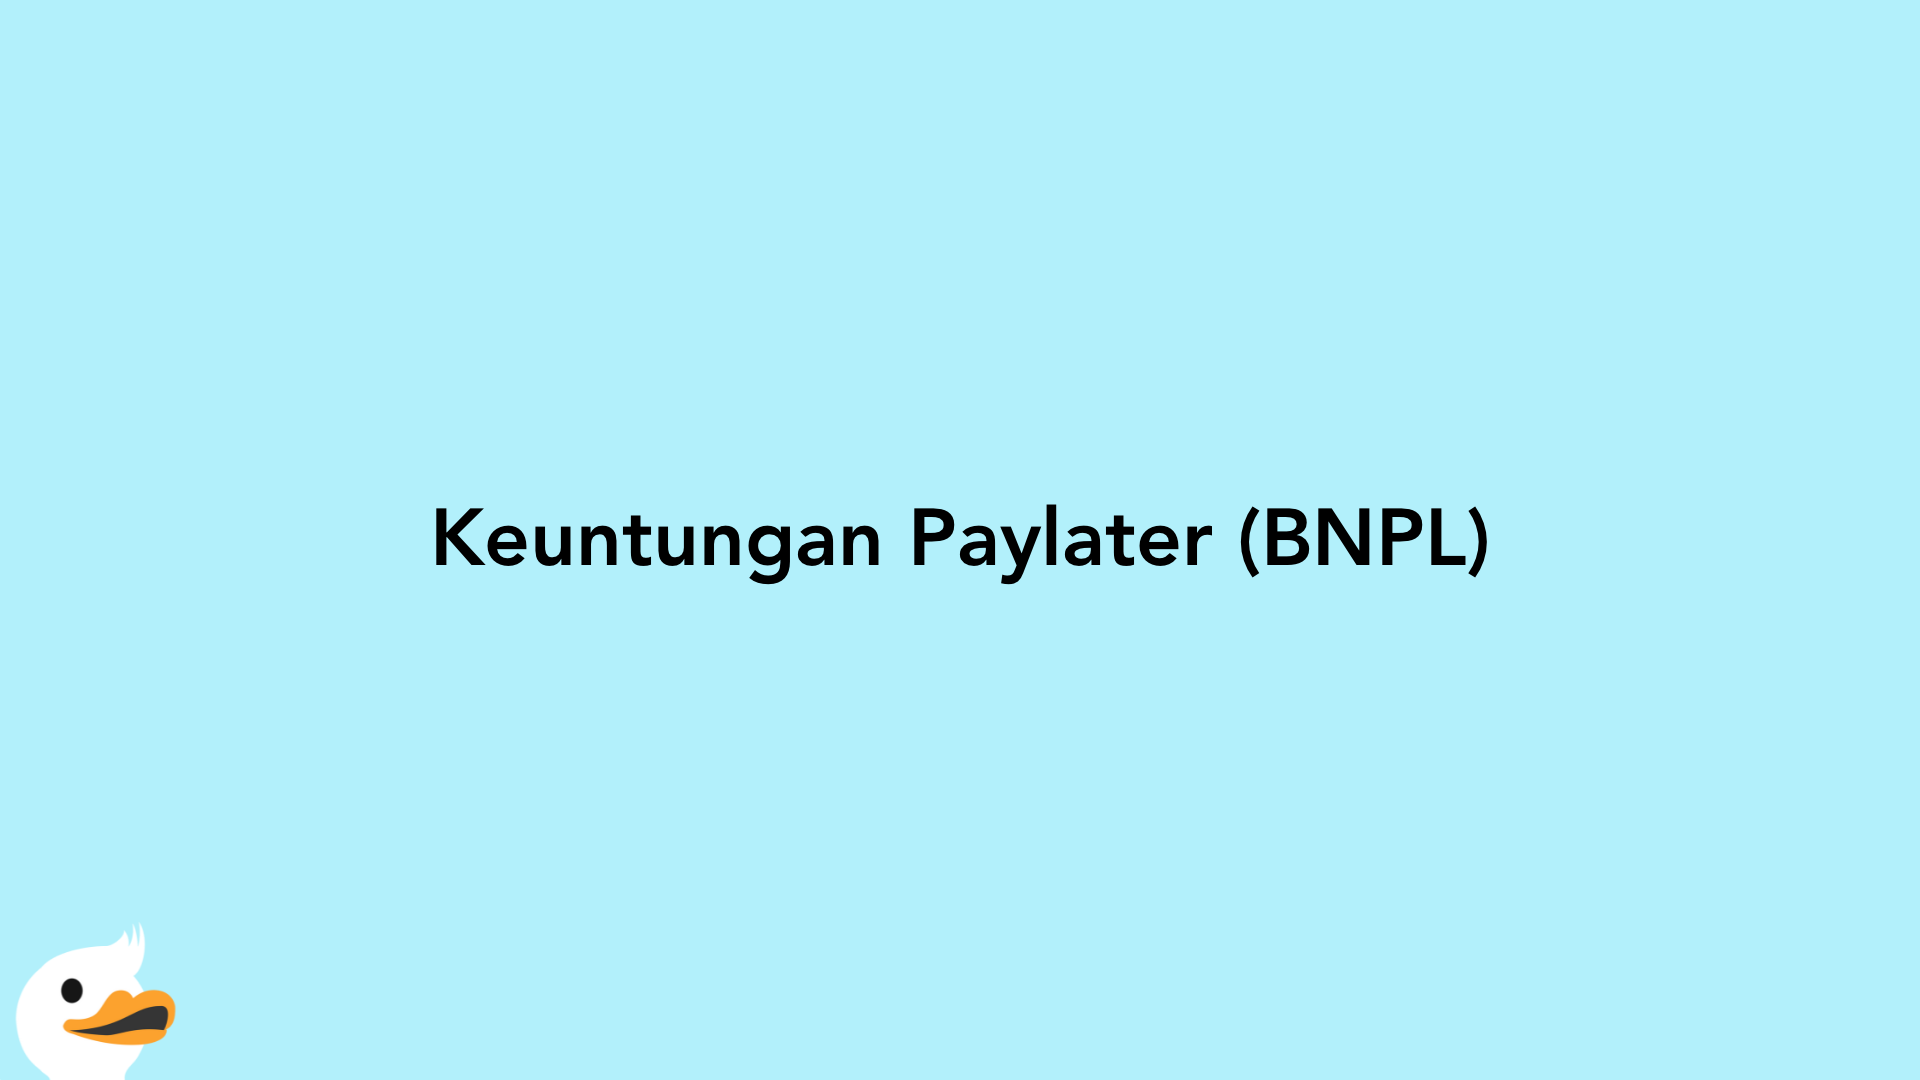 Keuntungan Paylater (BNPL)